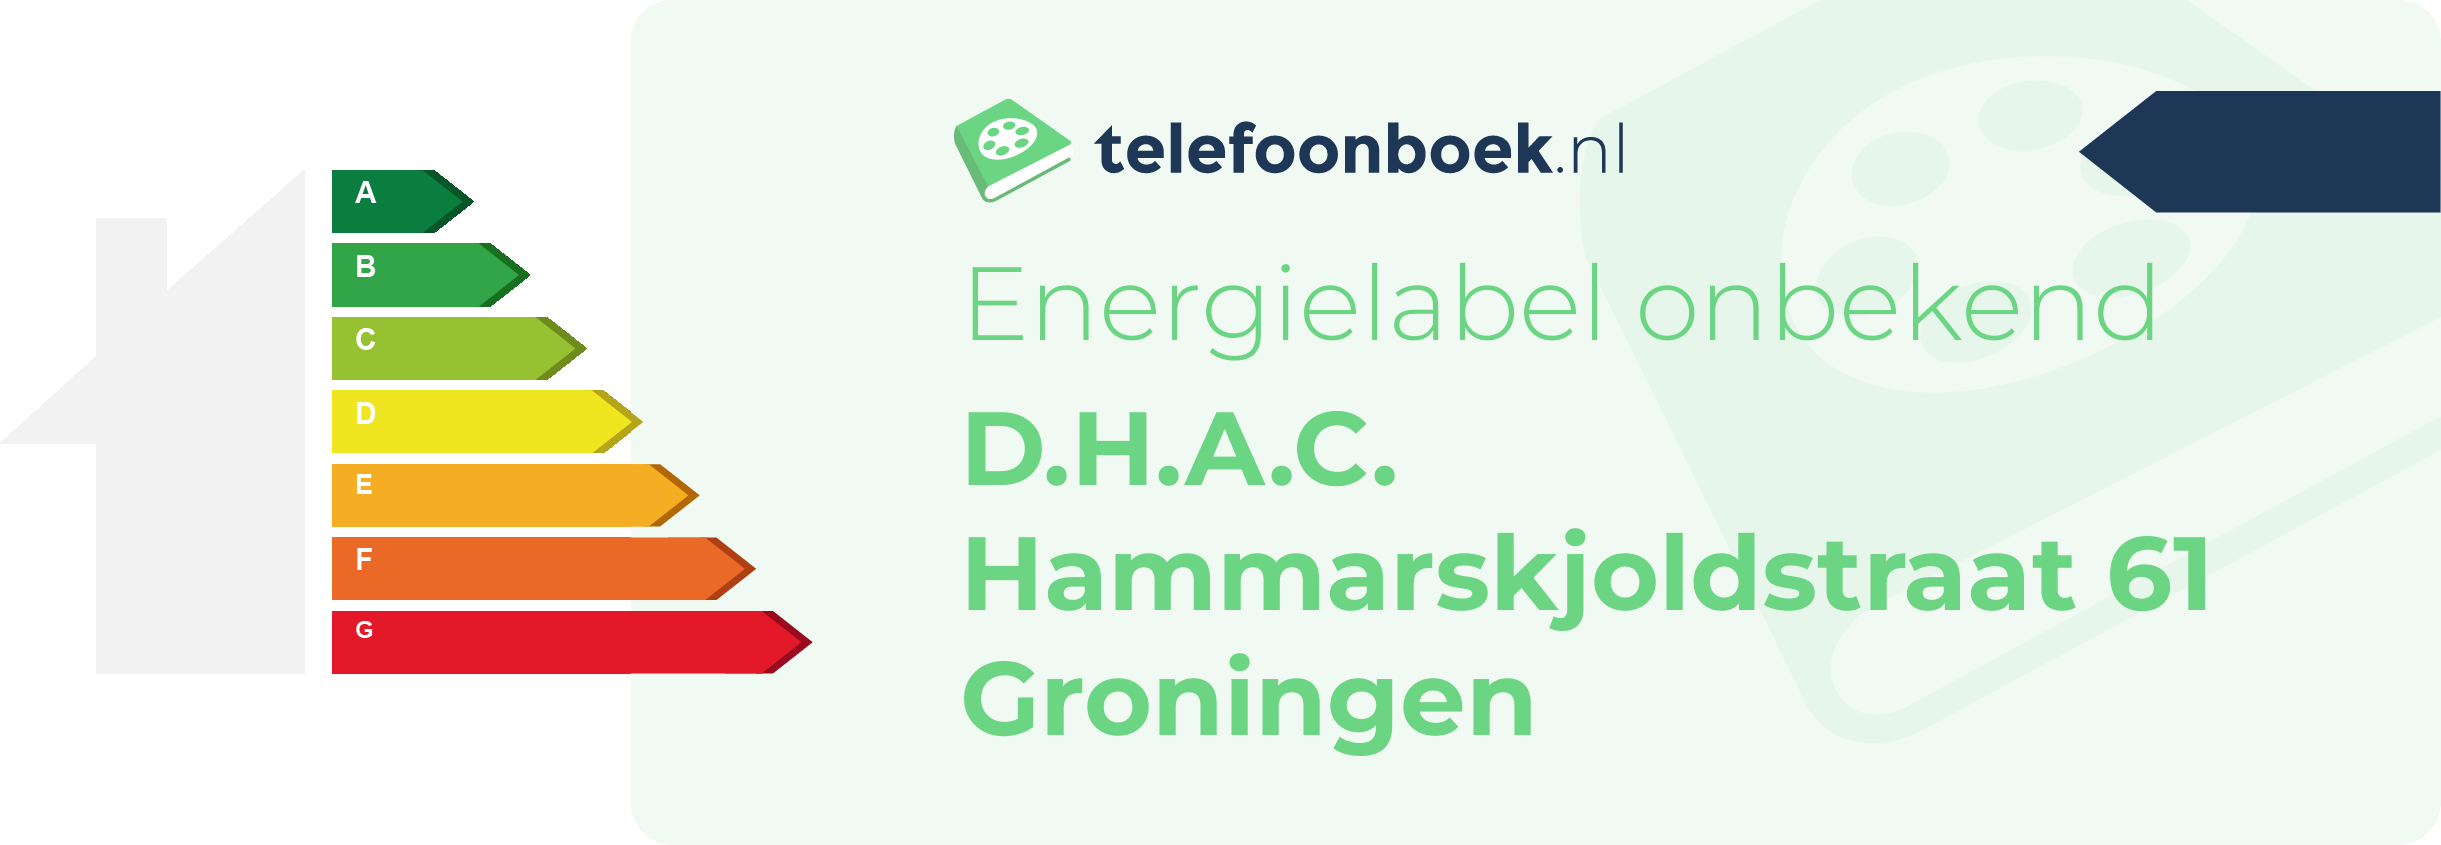 Energielabel D.H.A.C. Hammarskjoldstraat 61 Groningen